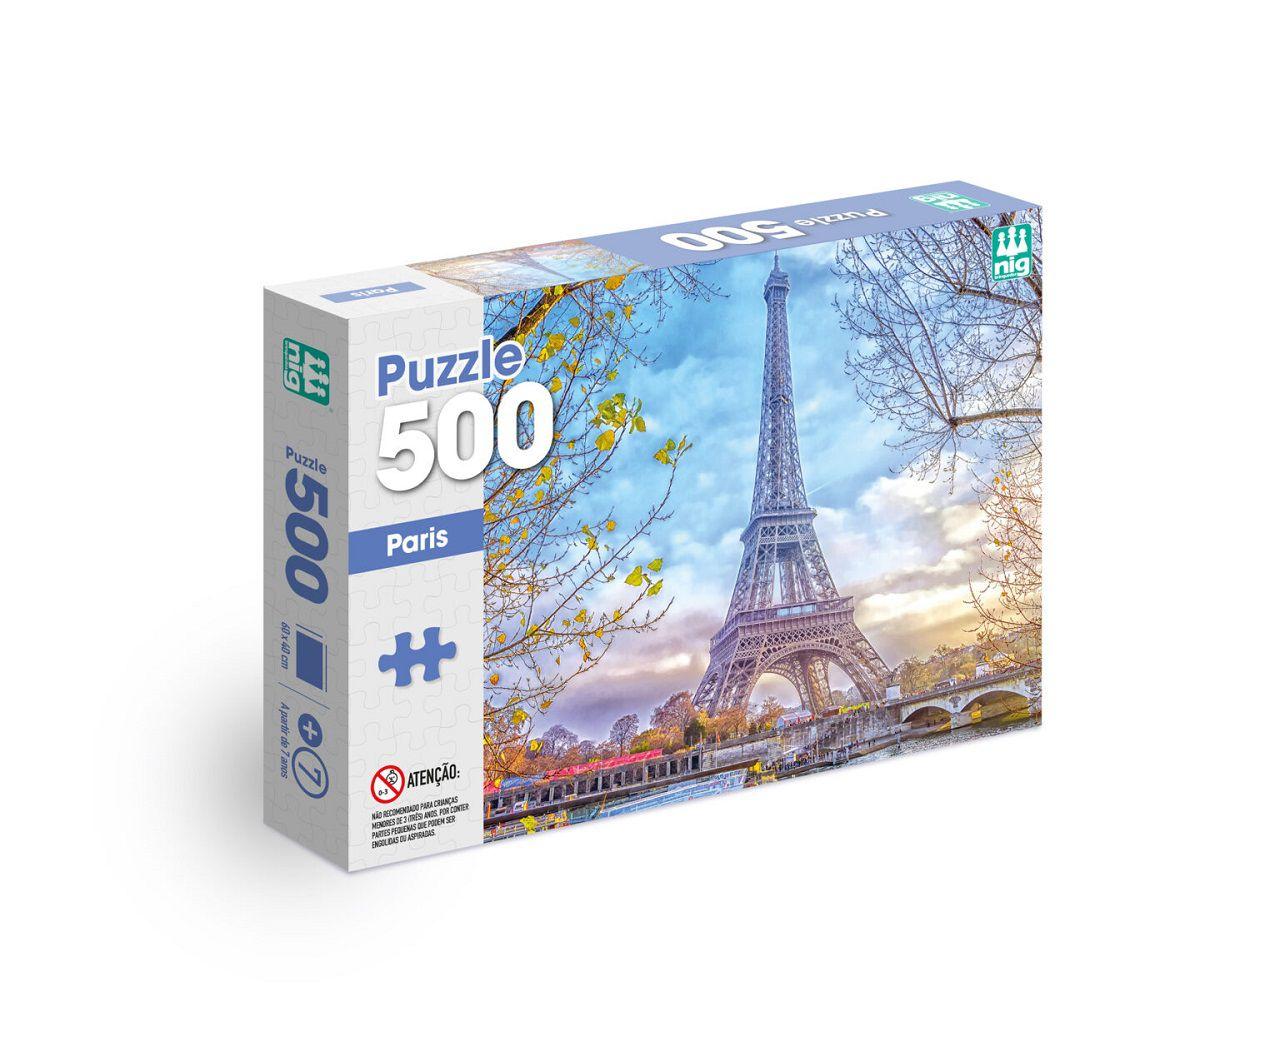 Quebra Cabeça Paisagens Turisticas do Mundo 100 Pçs - Torre Eiffel, Torre  de Pisa e muito mais lugares lindos!